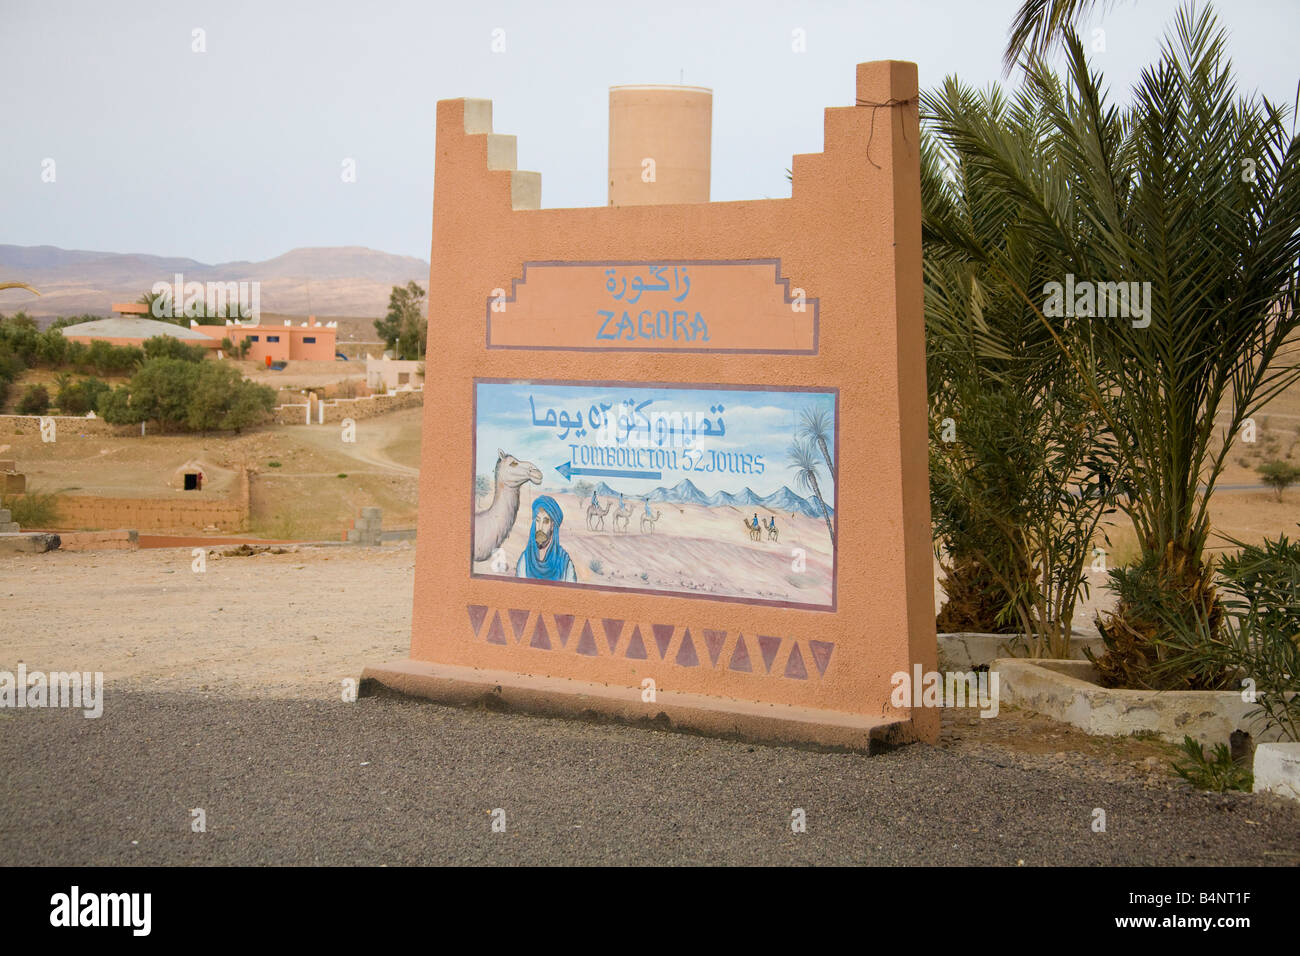 Cartello stradale di Tombouctou 52 Jours attraverso il deserto da cammello Timbuctù 52 giorni Zagora Marocco.orizzontale.89903 Marocco Foto Stock